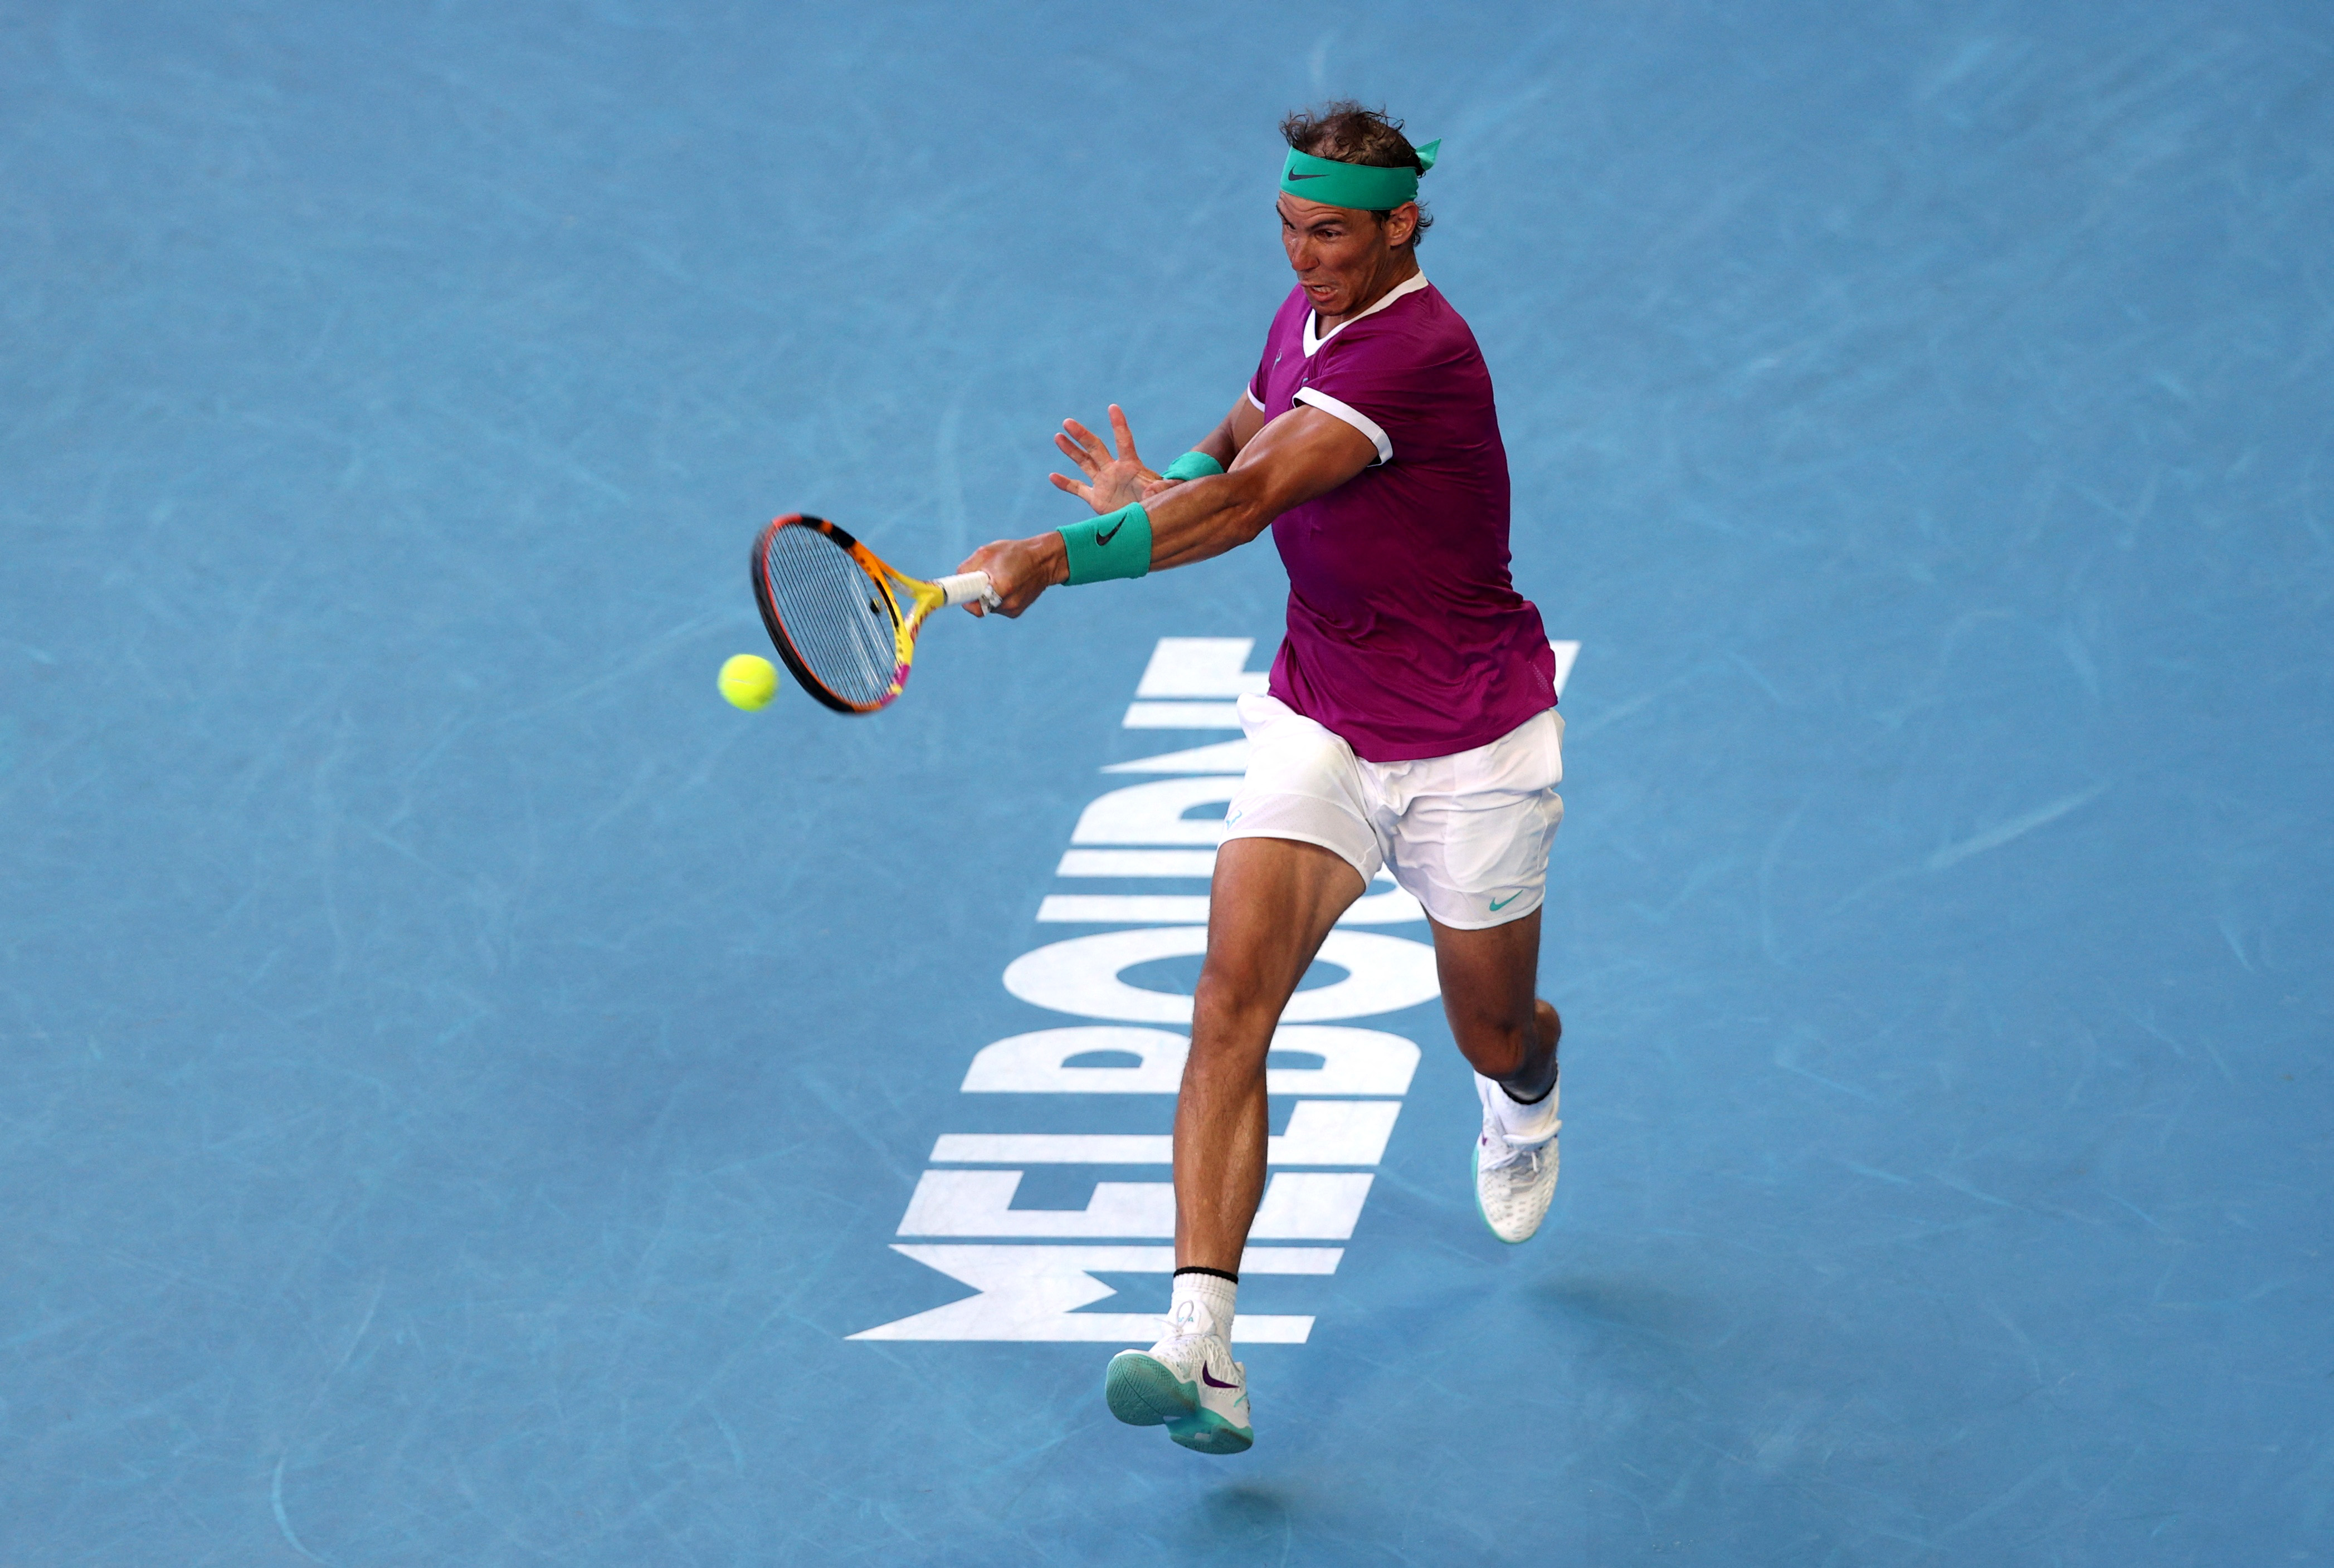 El próximo rival de Rafael Nadal en Australia es el italiano Matteo Berrettini (Foto: REUTERS)